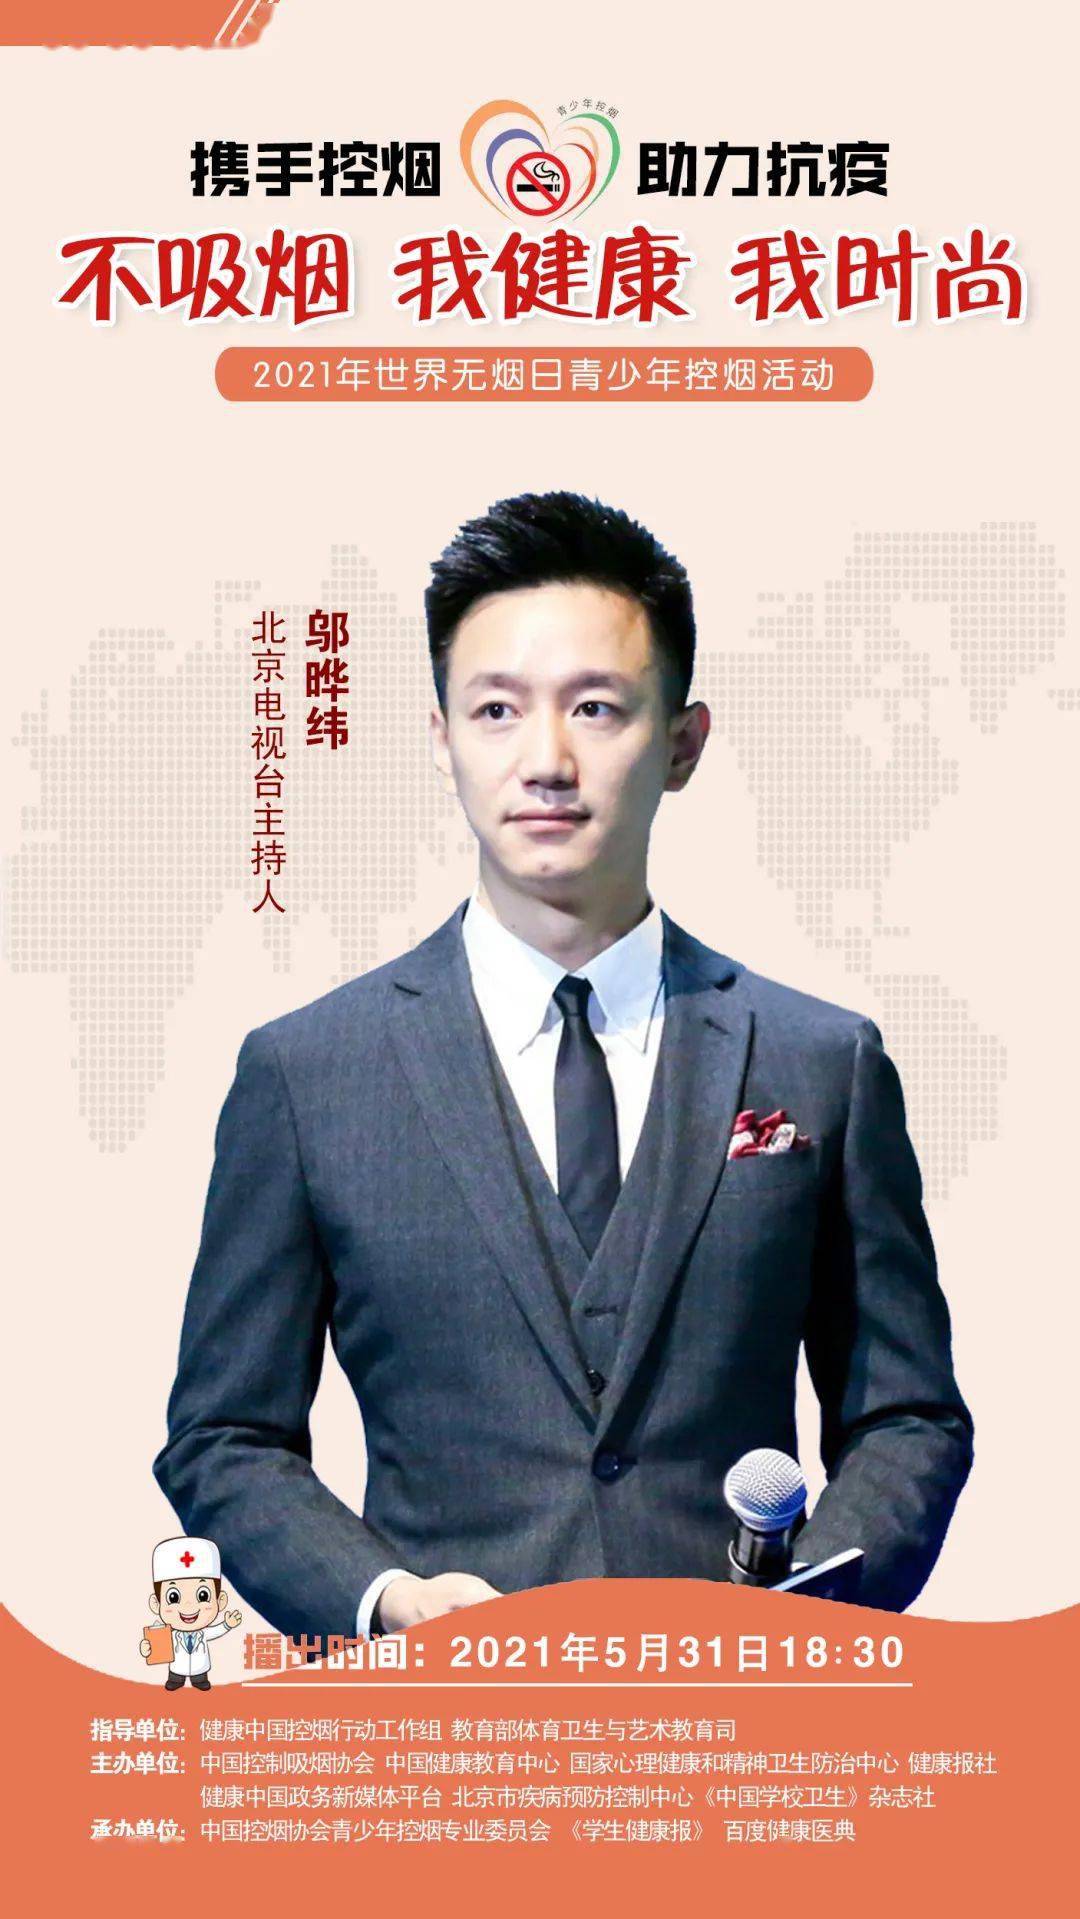 青年影视演员许魏洲和北京电视台主持人邬晔纬为青少年控烟助力